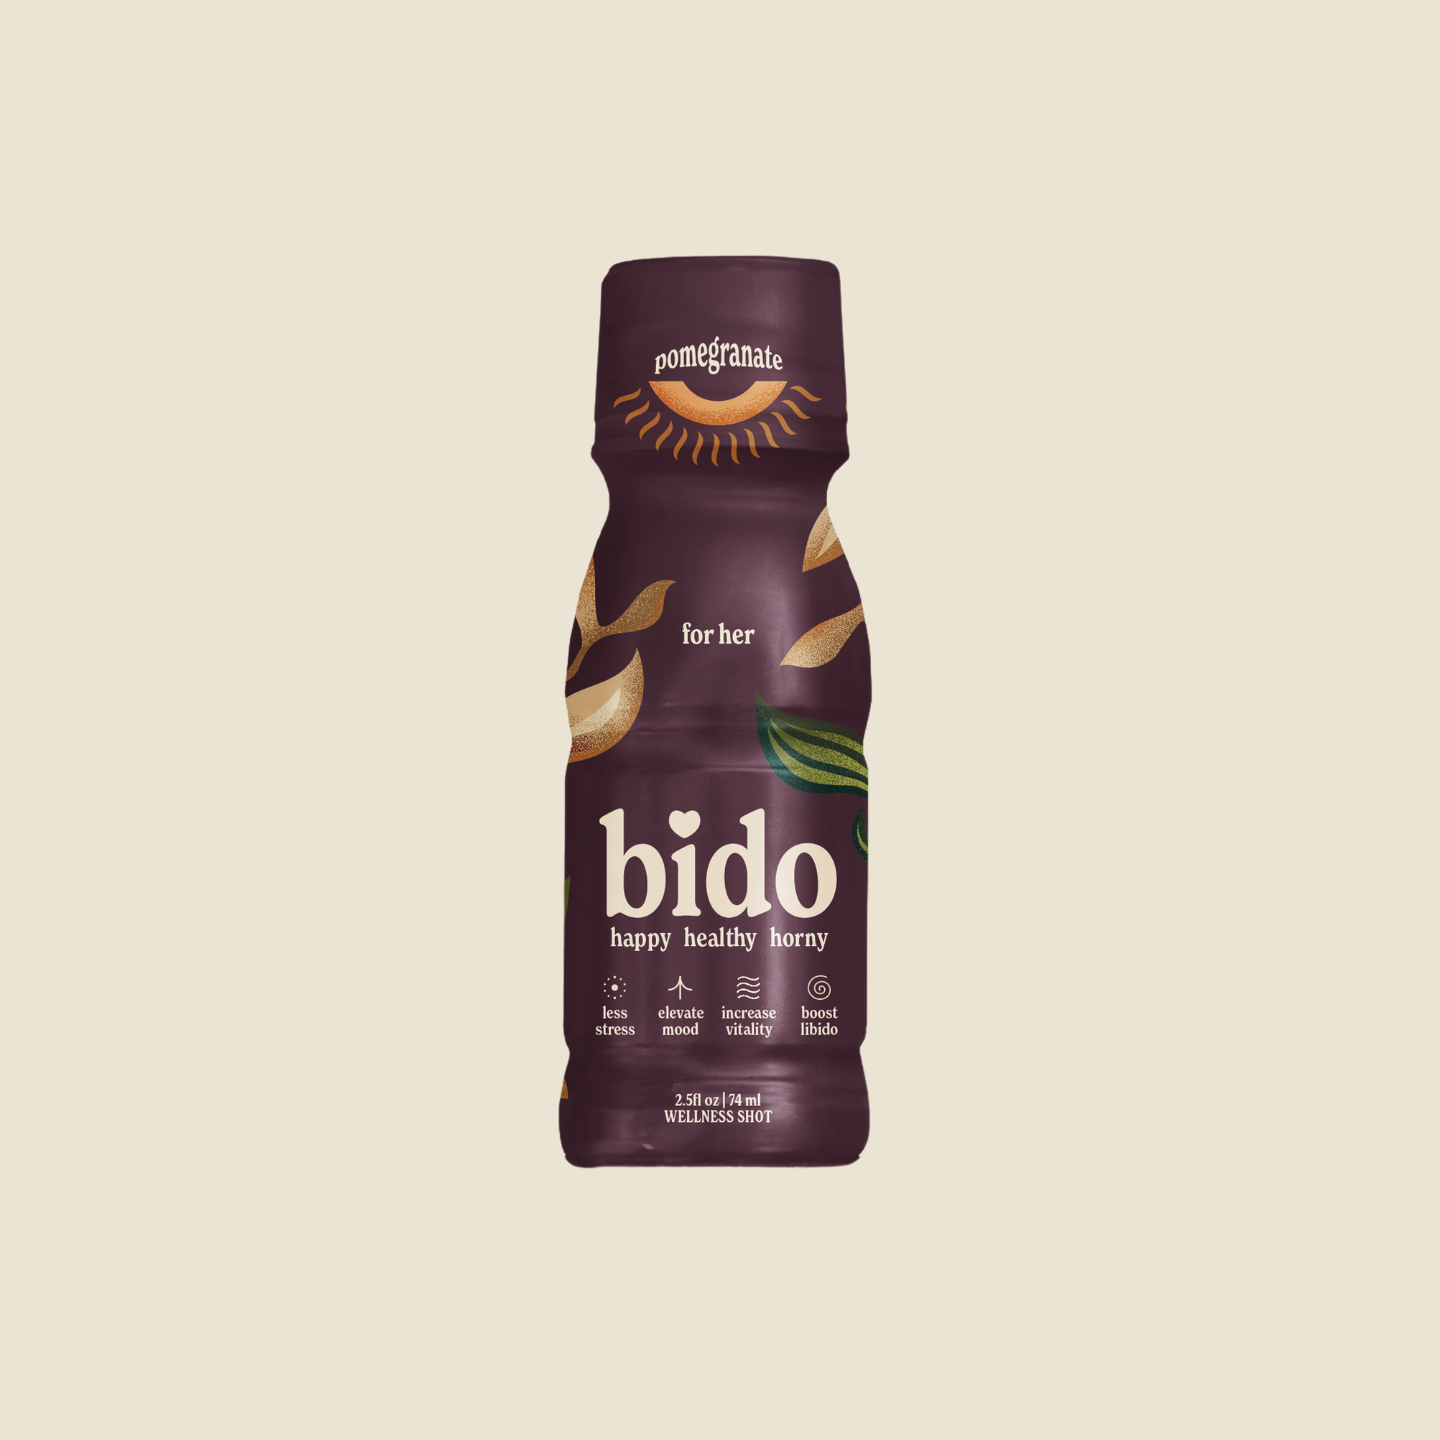 A bottle of 'bido' pomegranate-flavored wellness shot for women.